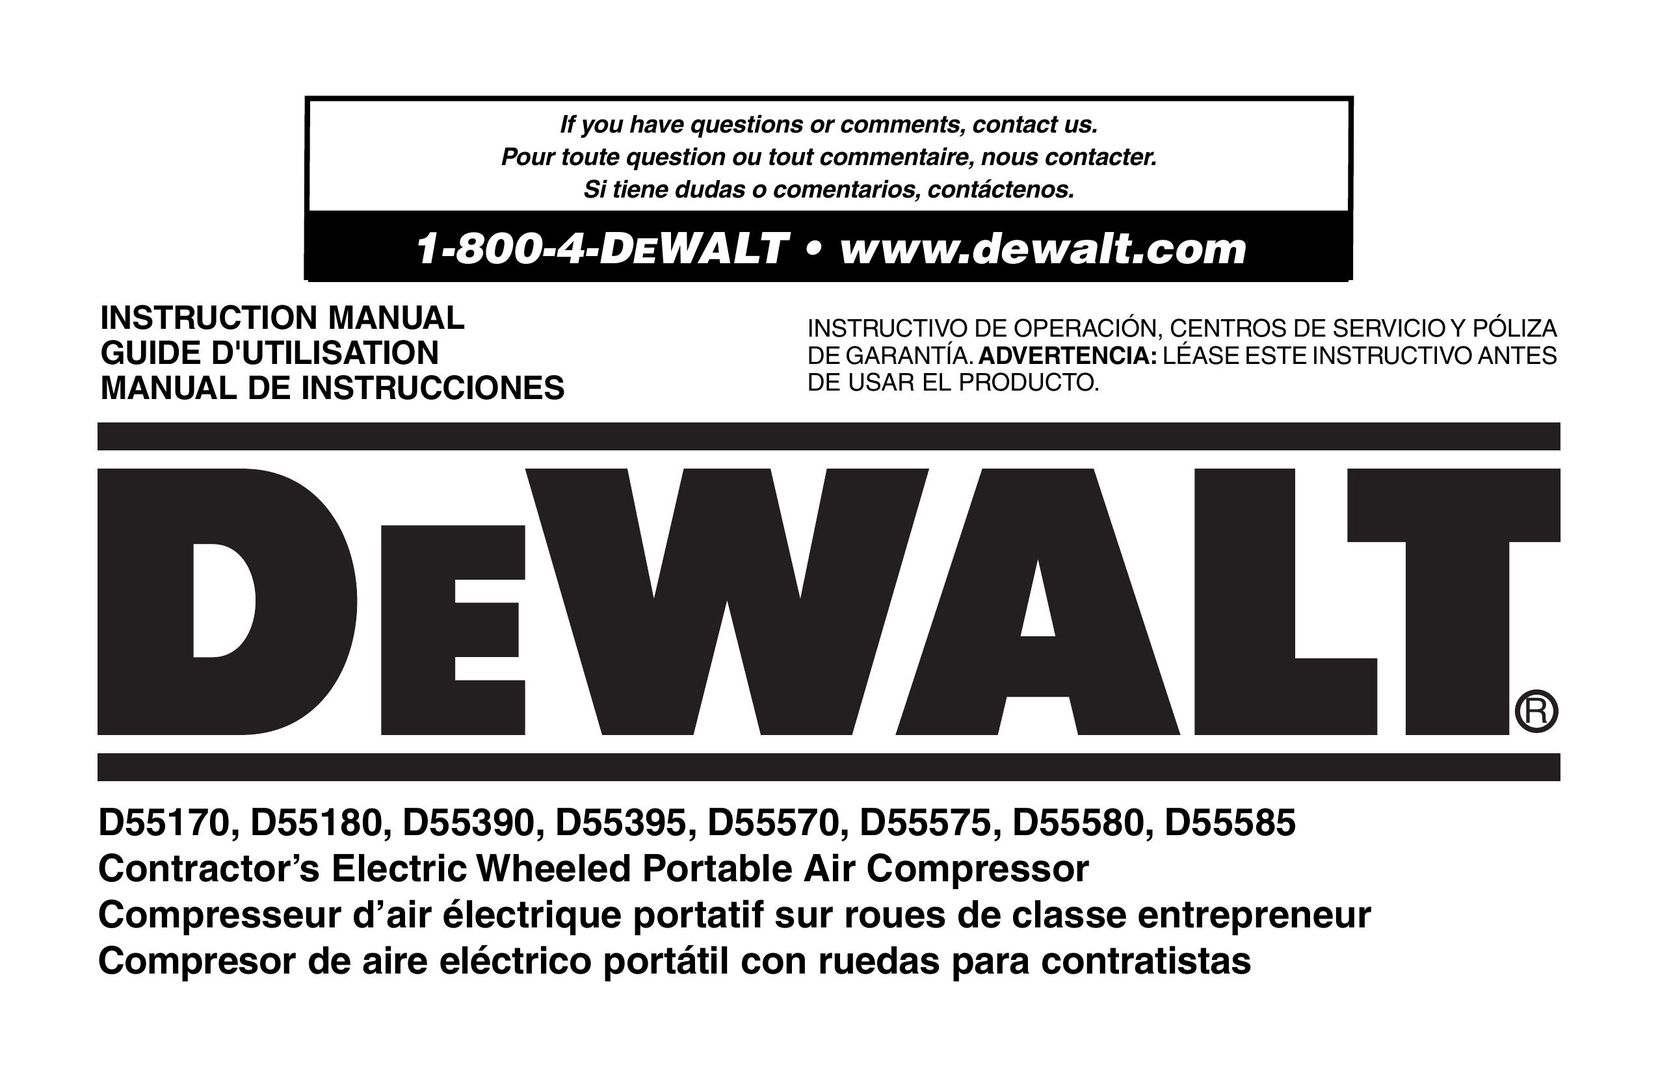 DeWalt D55359 Air Compressor User Manual